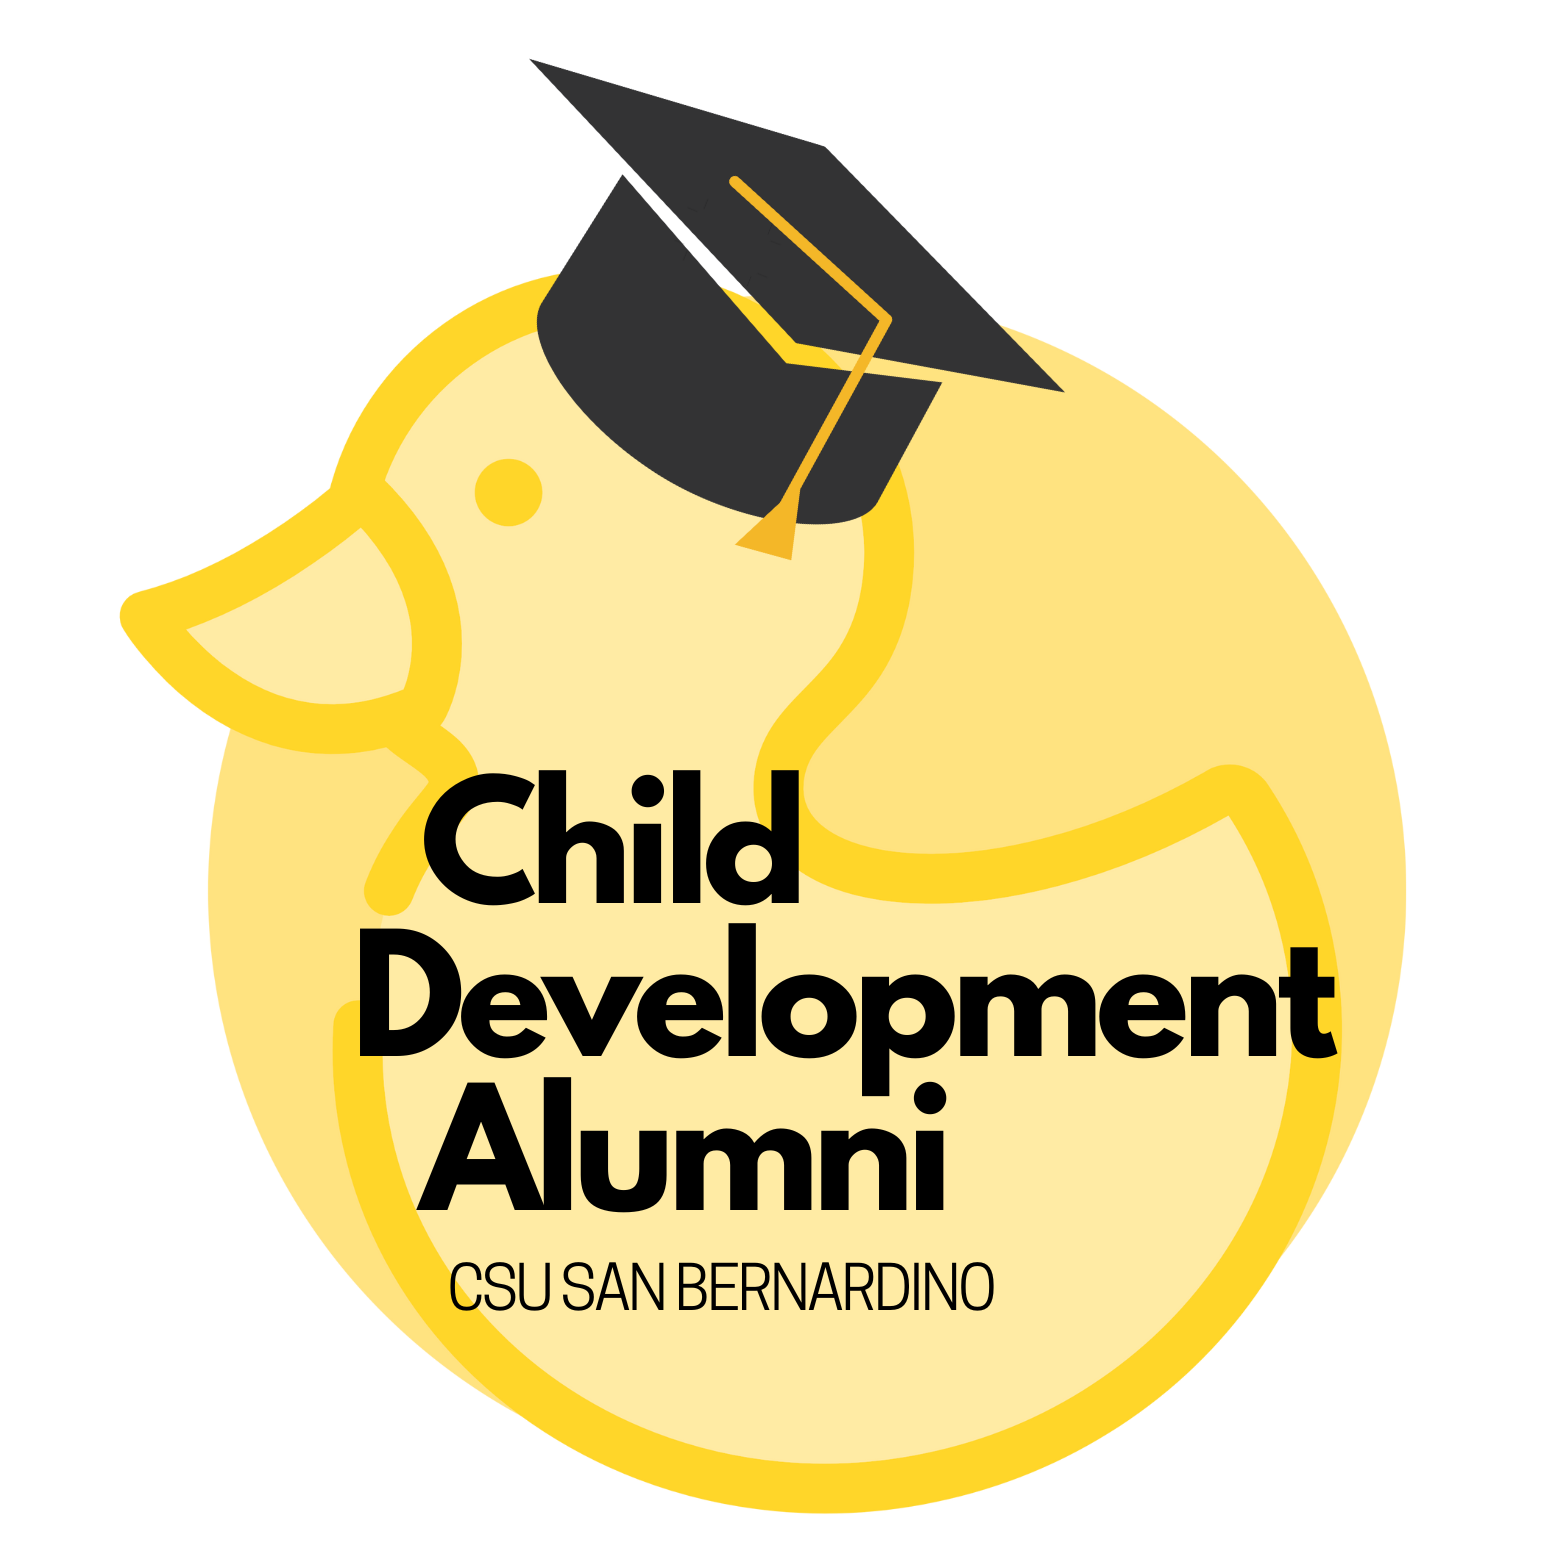 Child Development Alumni Logo - Rubber Duck with Grad Cap